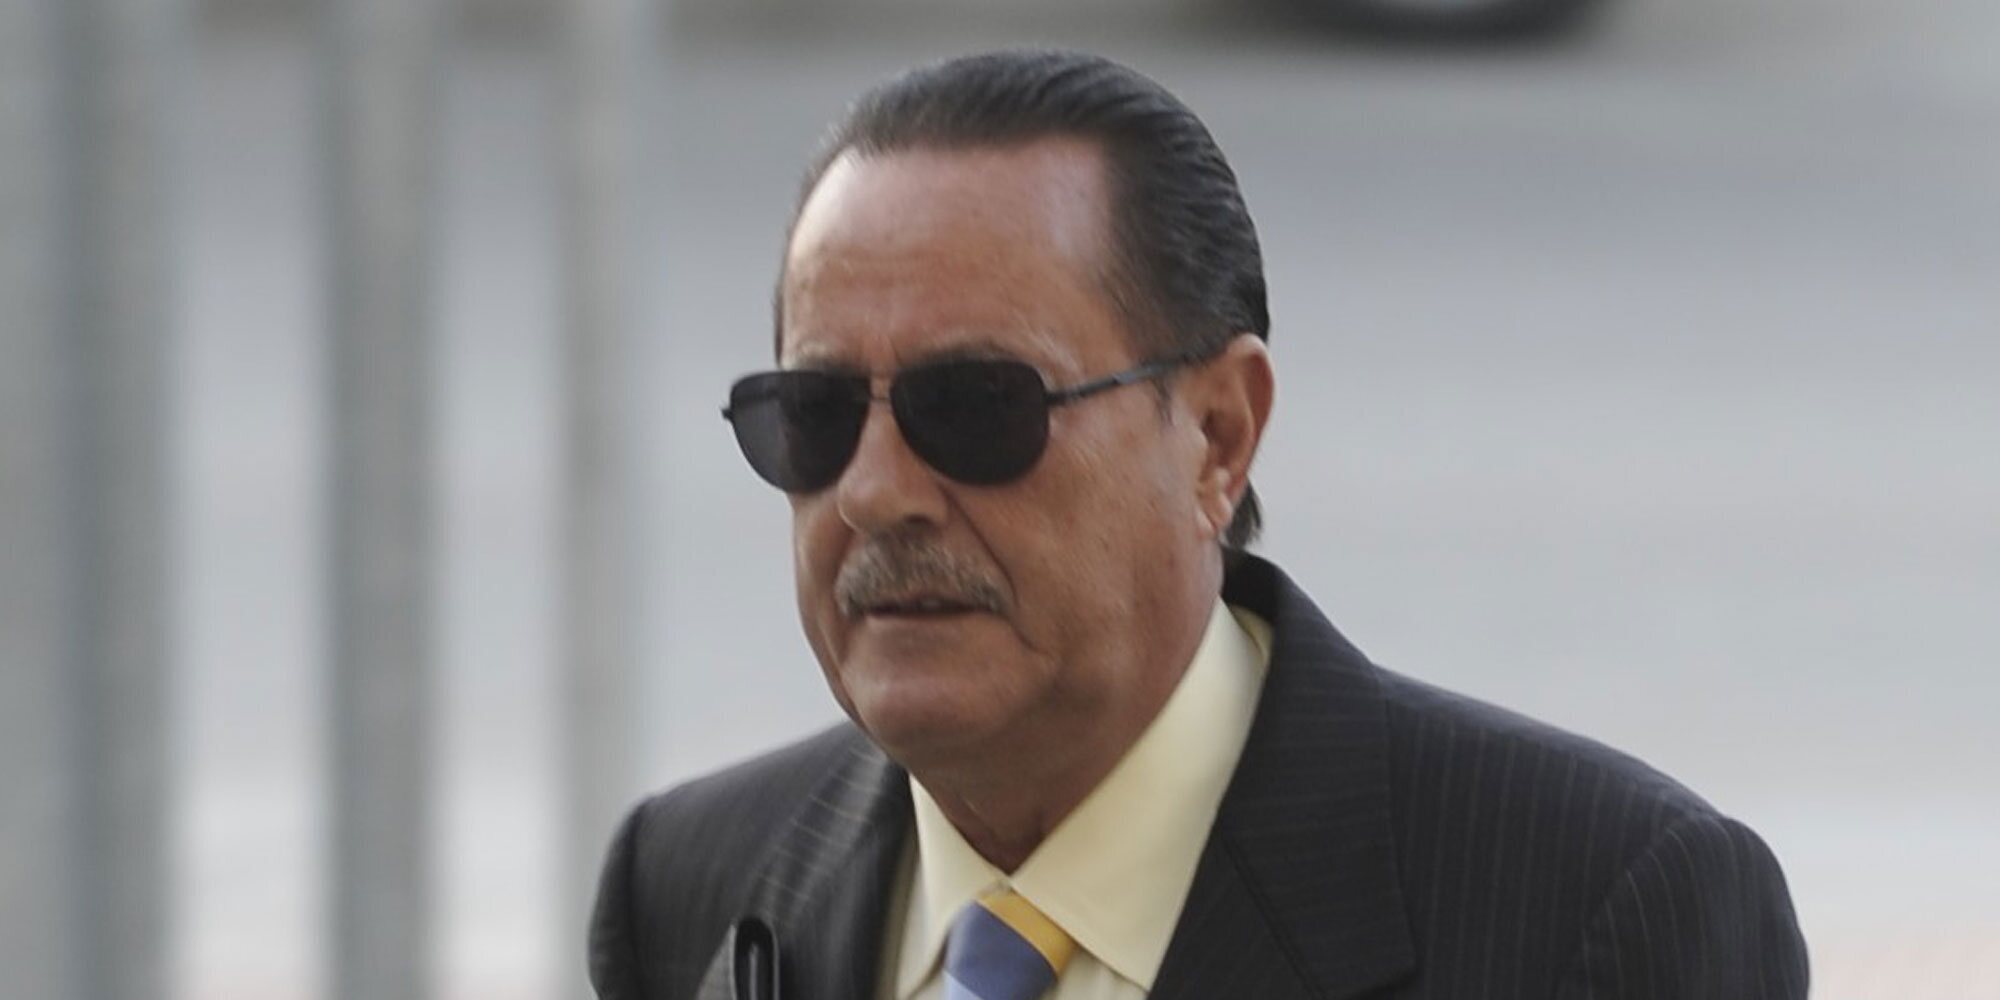 Julián Muñoz obtiene la libertad condicional debido a su delicado estado de salud